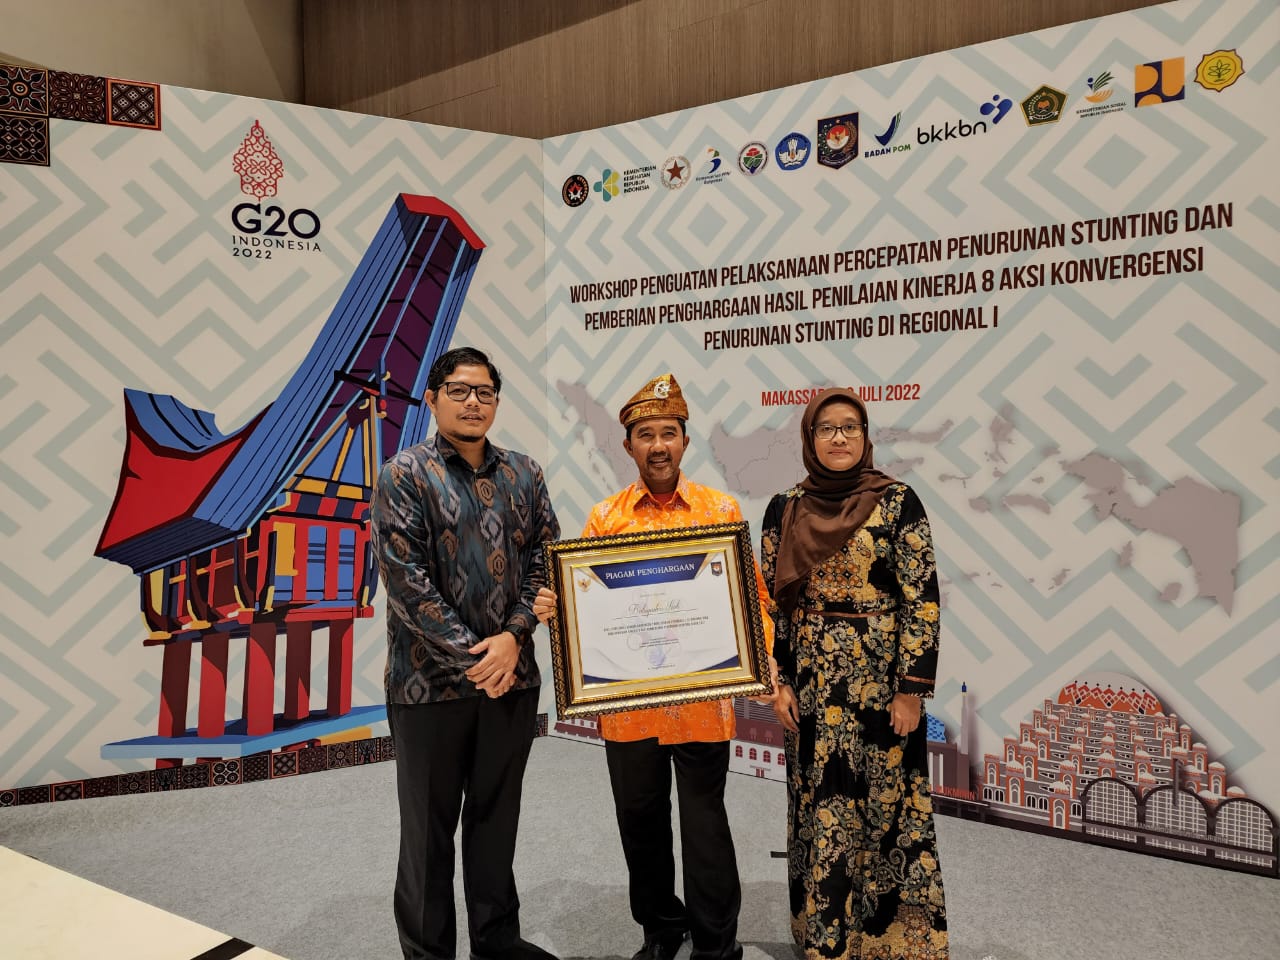 Siak Peroleh Penghargaan Terbaik Pertama Aksi Konvergensi Penurunan Stunting se-Provinsi Riau